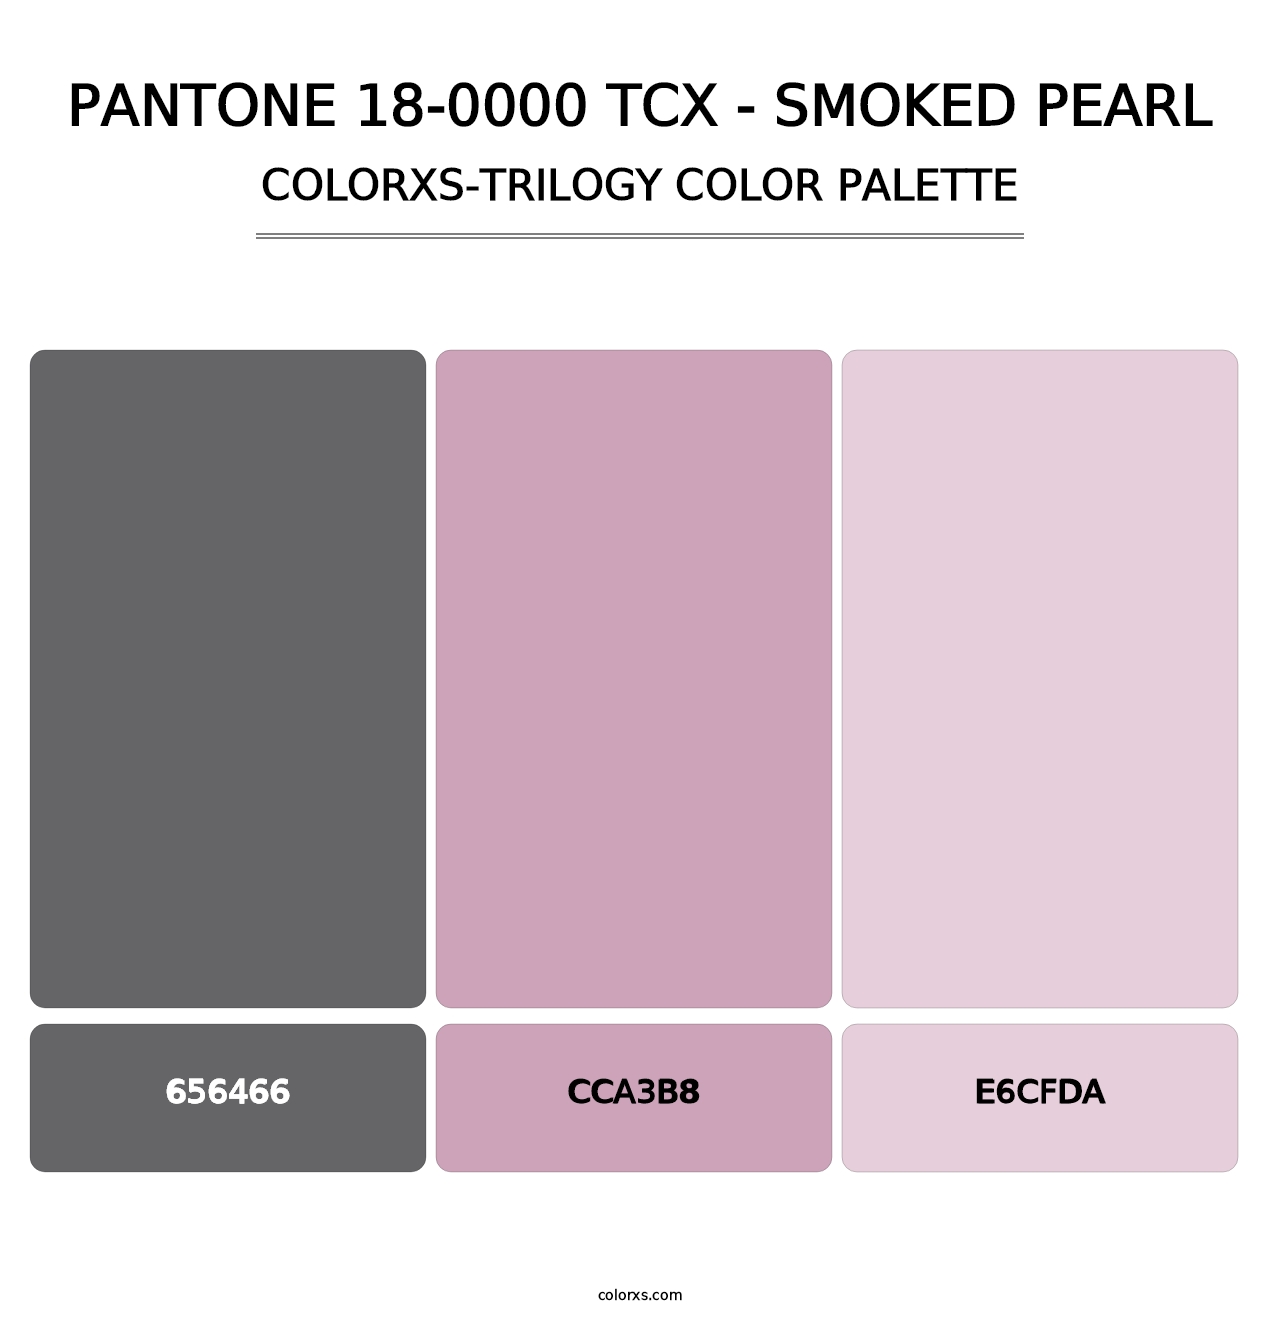 PANTONE 18-0000 TCX - Smoked Pearl - Colorxs Trilogy Palette